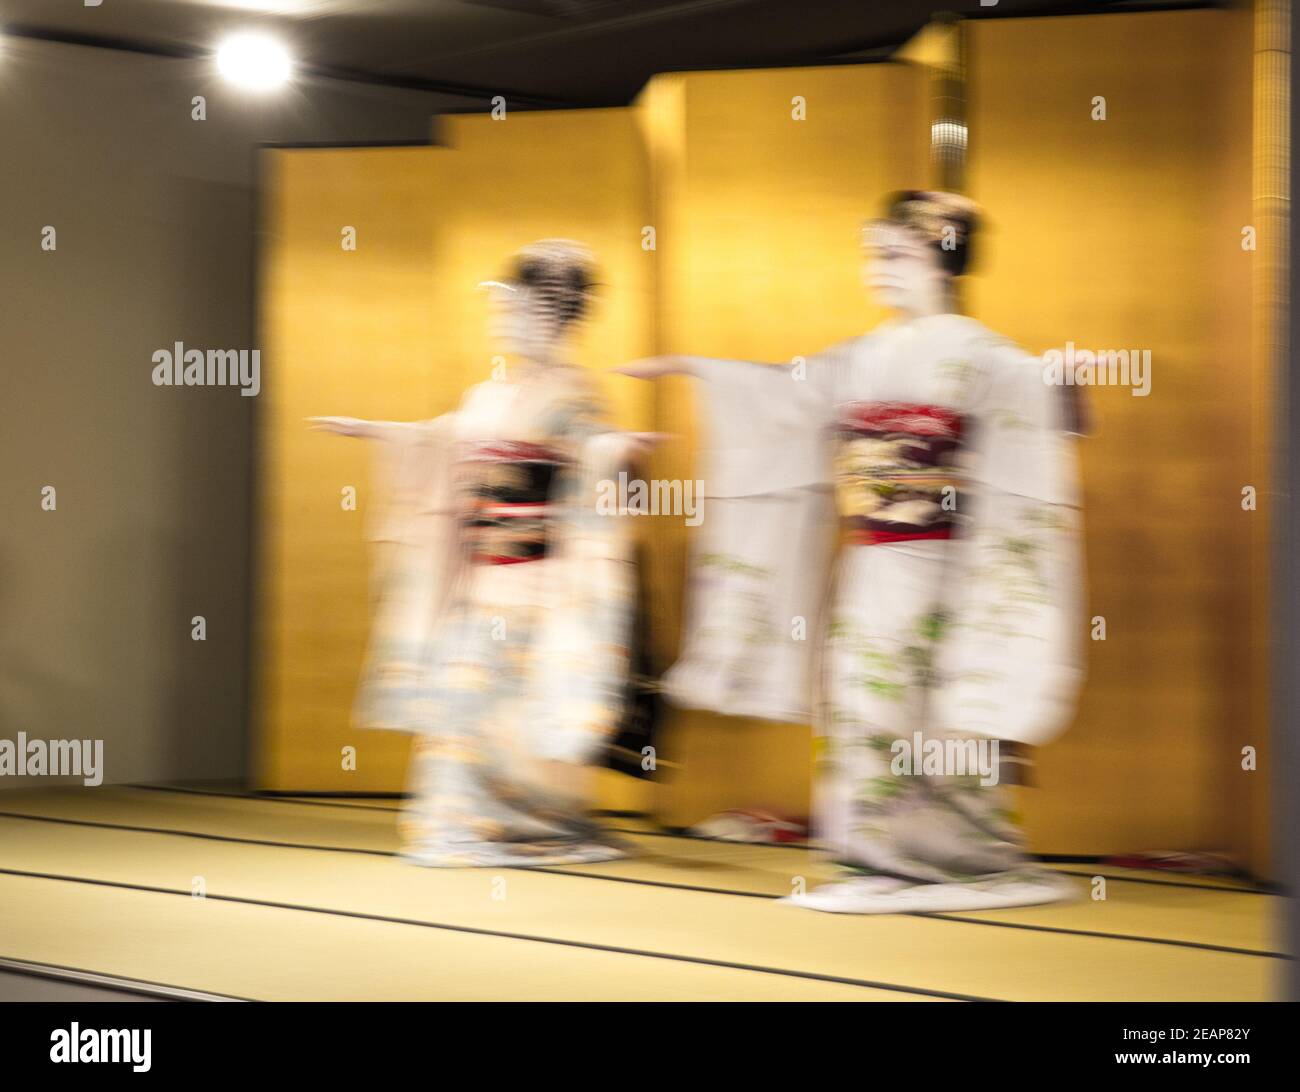 Mouvement artistique exposition longue deux Geishas danse cérémonie, image fantôme. Rouge, blanc, noir et or kimono Kyoto, Japon, Asie Banque D'Images